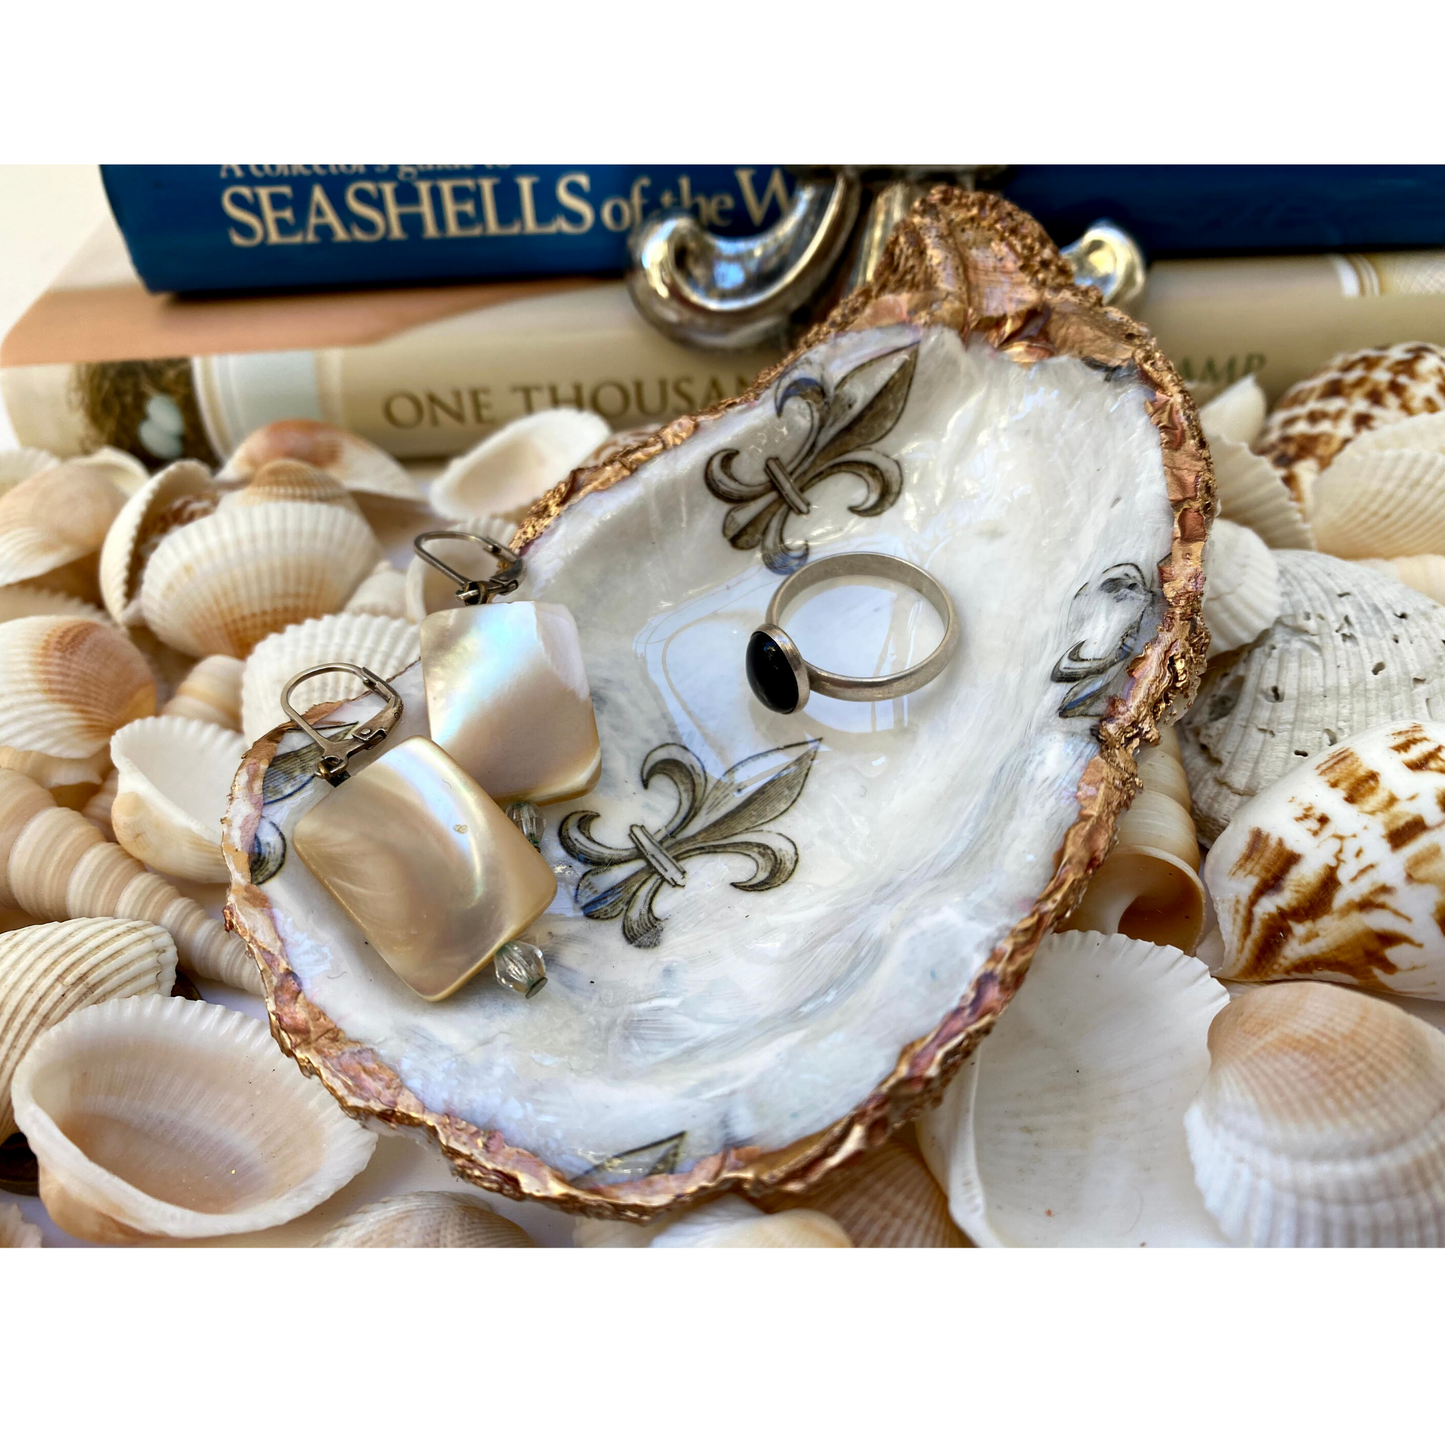 fleur de lis oyster shell art